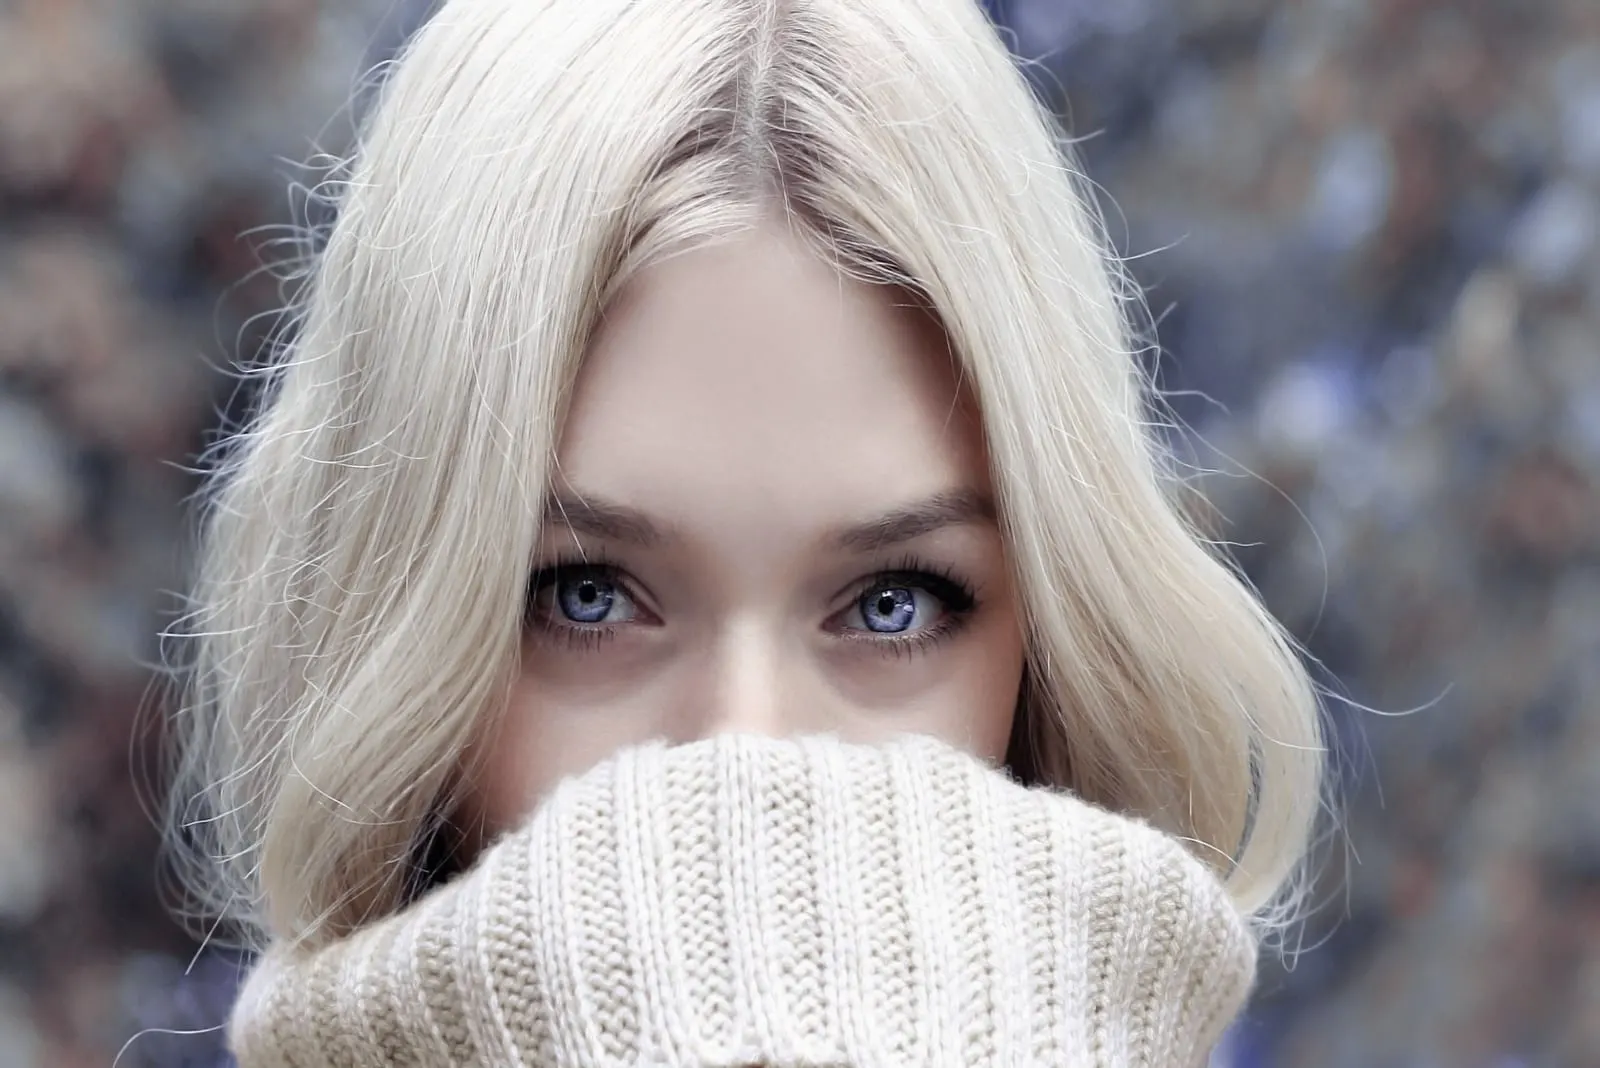 blonde woman in beige turtleneck sweater standing outdoor